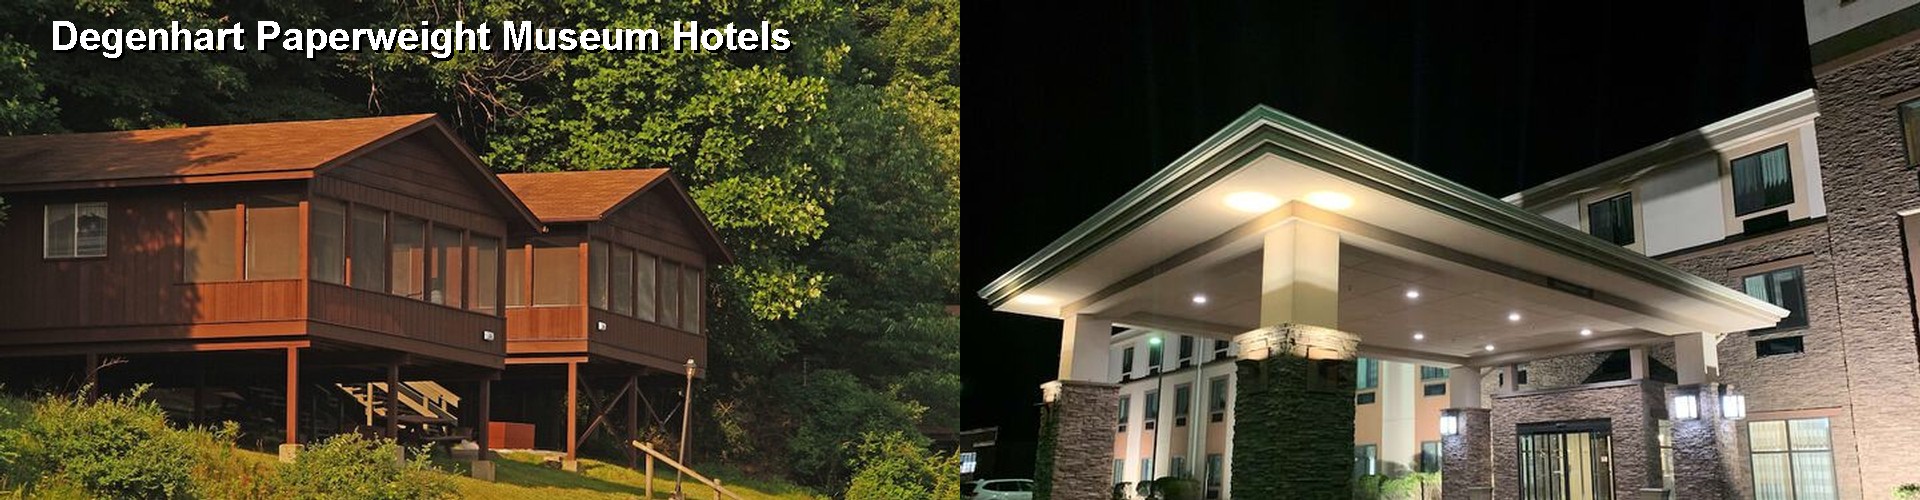 5 Best Hotels near Degenhart Paperweight Museum